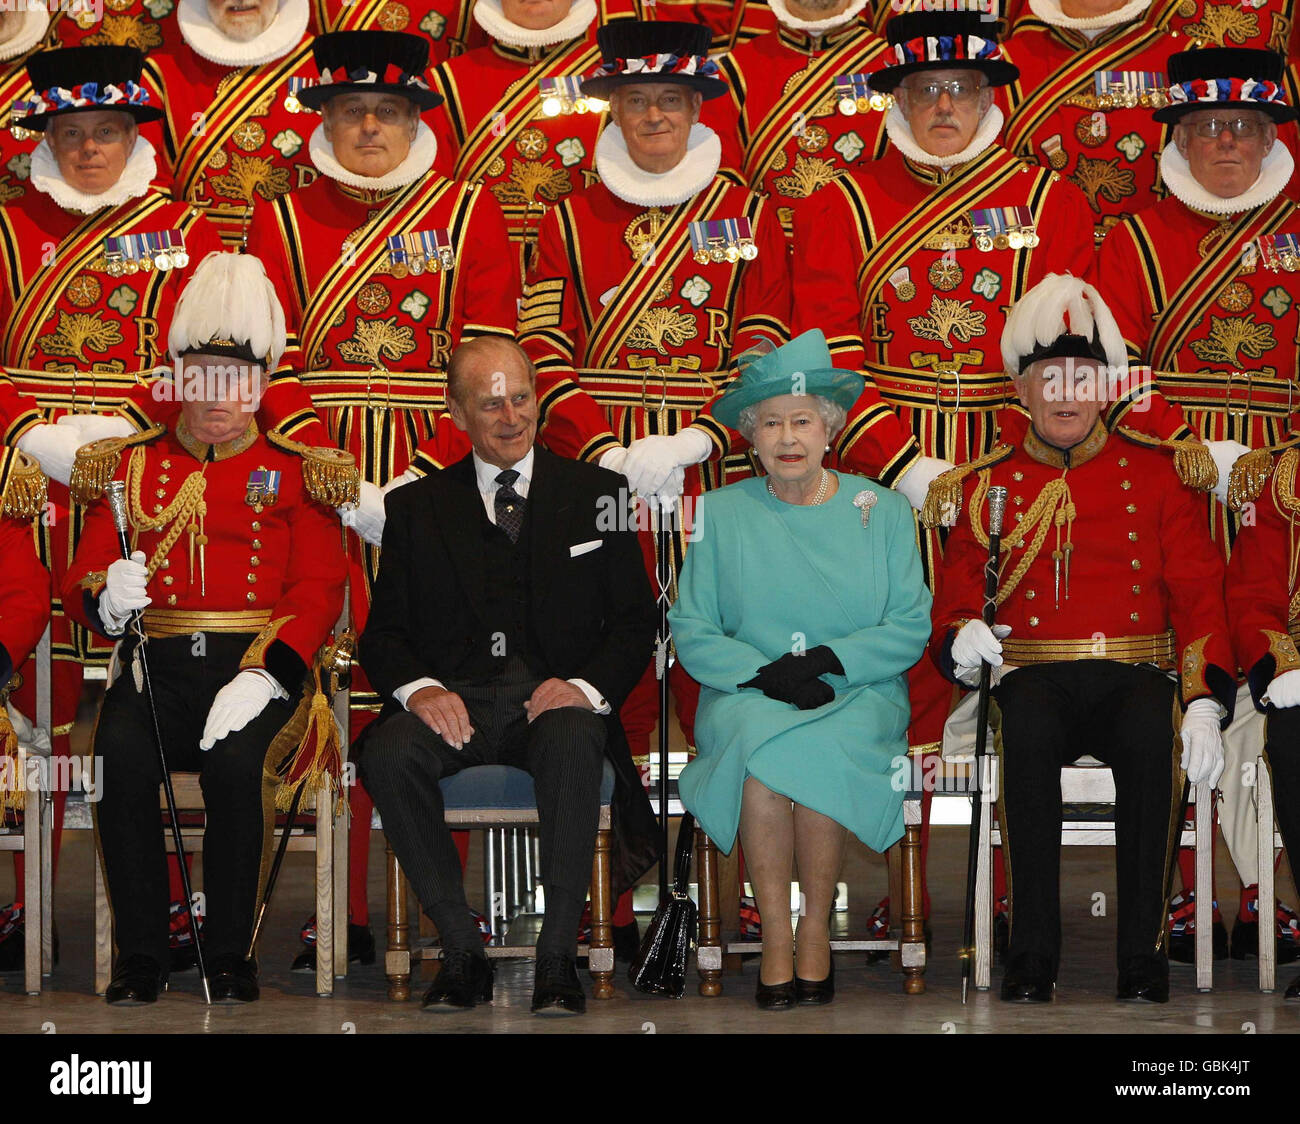 La Regina Elisabetta II della Gran Bretagna e il Duca di Edimburgo (centro) posano per una fotografia di gruppo con i membri della Guardia corpo della Regina degli Yeomen della Guardia all'Abbazia di Westminster a Londra. Foto Stock